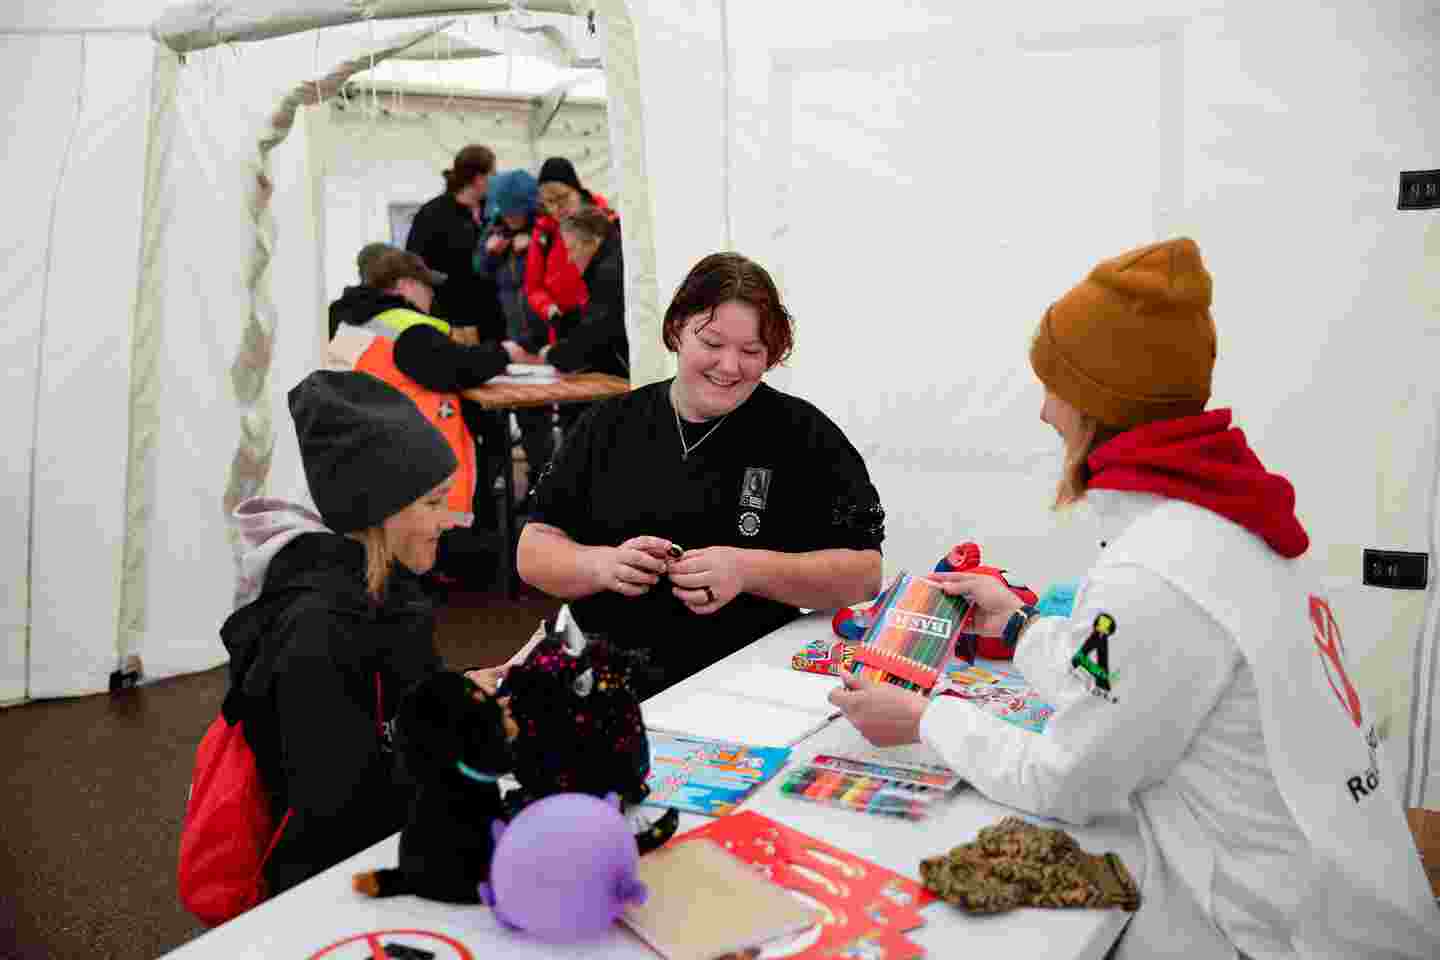 En frivillig från Rädda Barnen visar färgpennor för ett barn i tältet. Barnets mor tittar leende på bredvid.